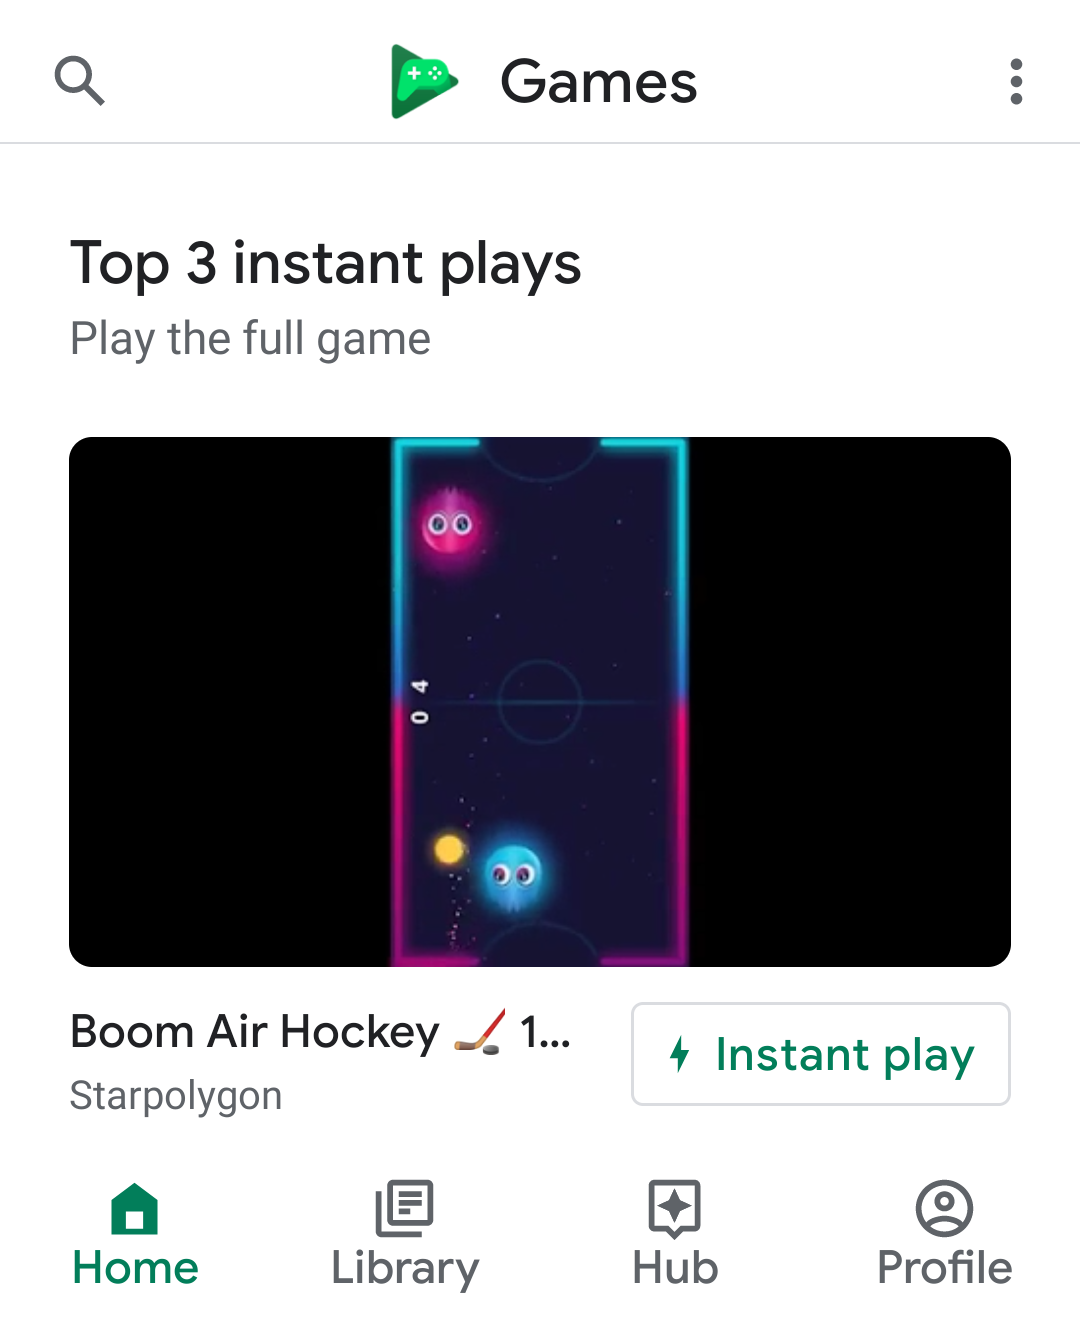 Visão geral do Google Play Instant